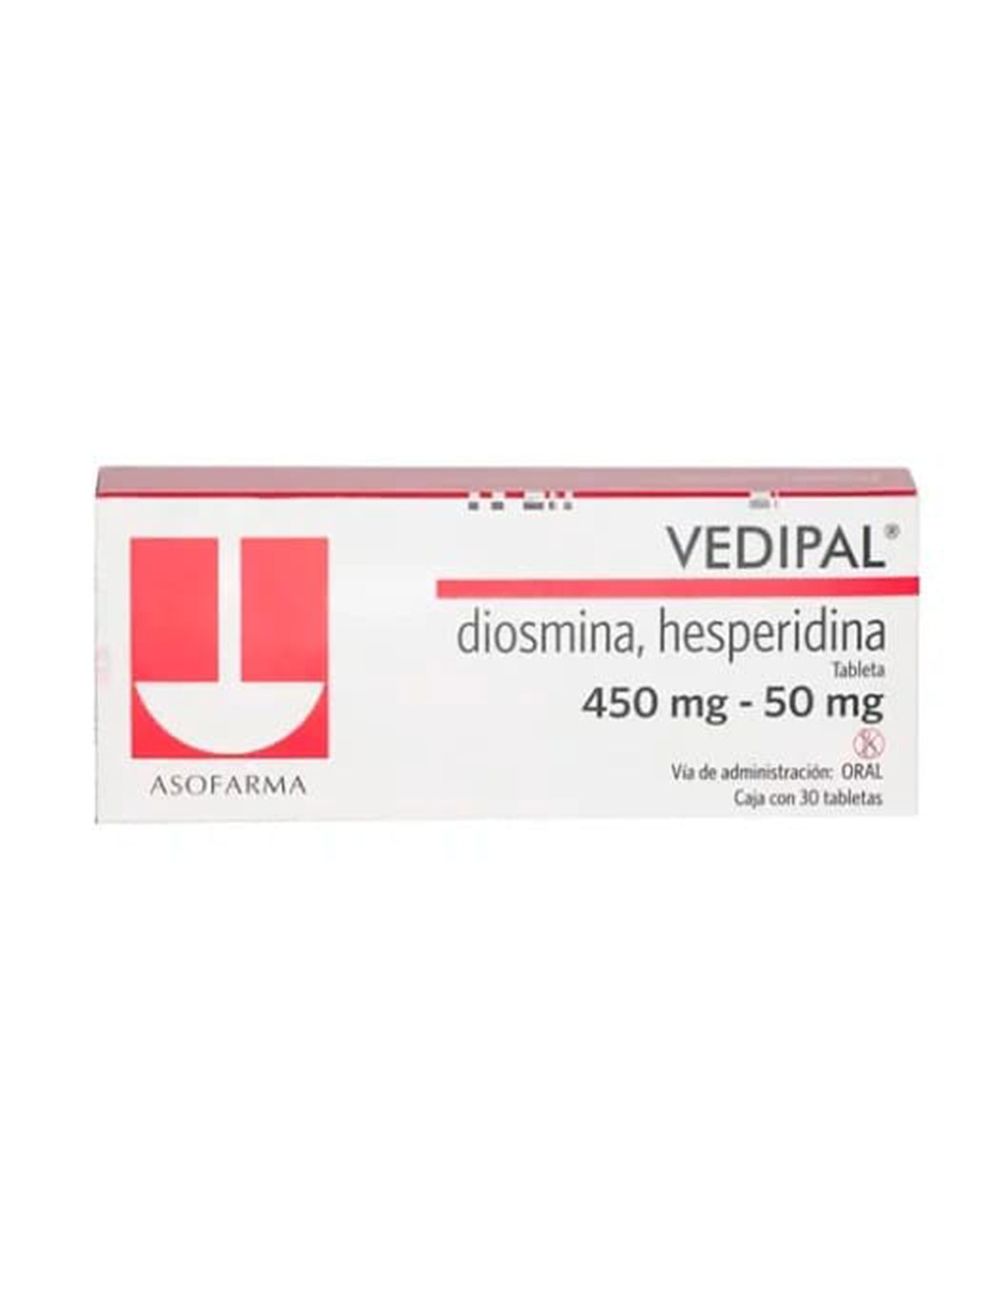 Vedipal 450/50 mg 30 Tabletas